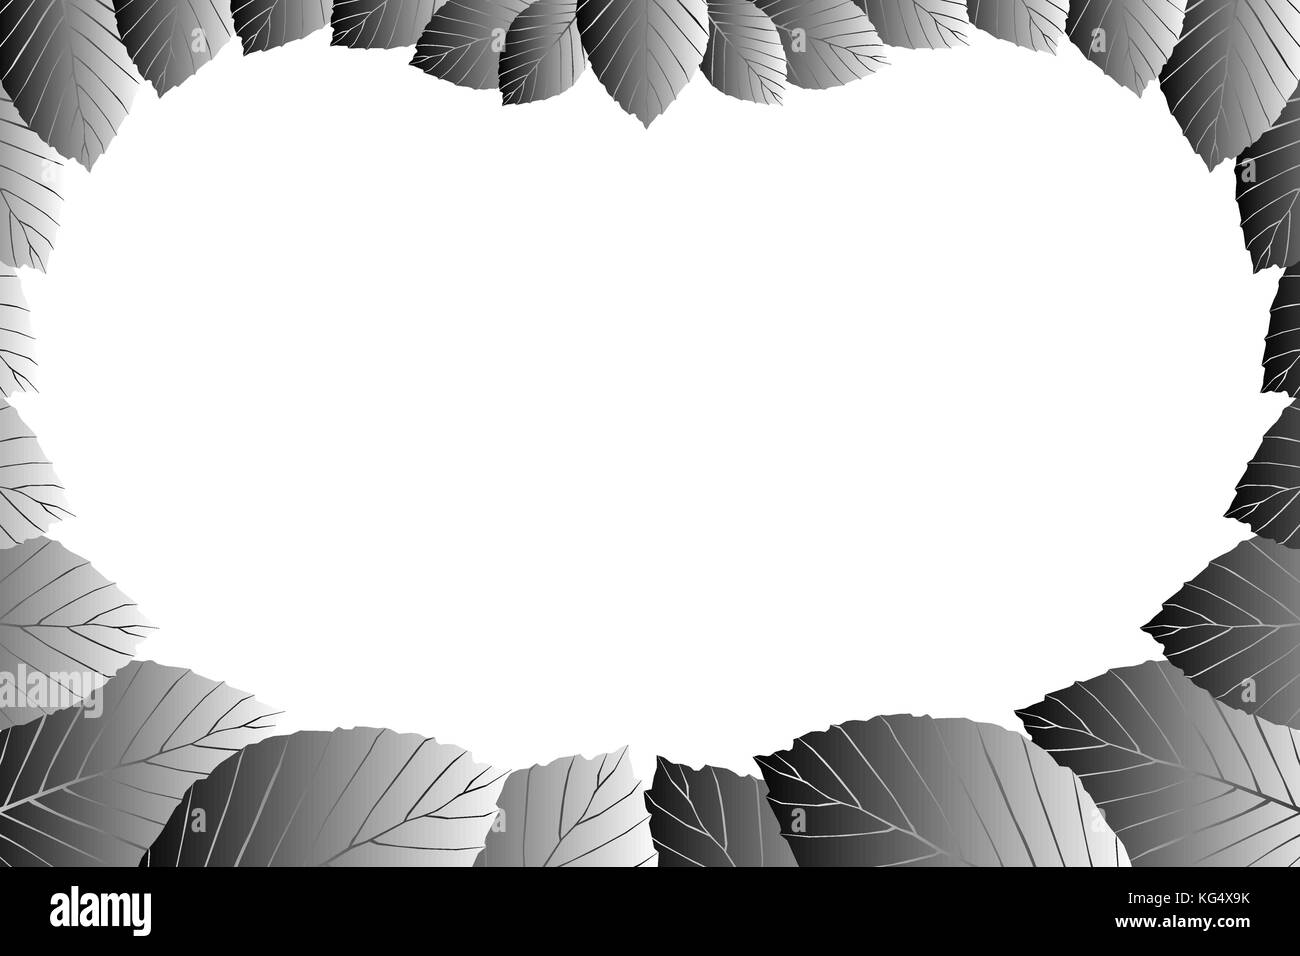 Grigio foglia di faggio su uno sfondo bianco - vettore frame (Fagus sylvatica) Illustrazione Vettoriale